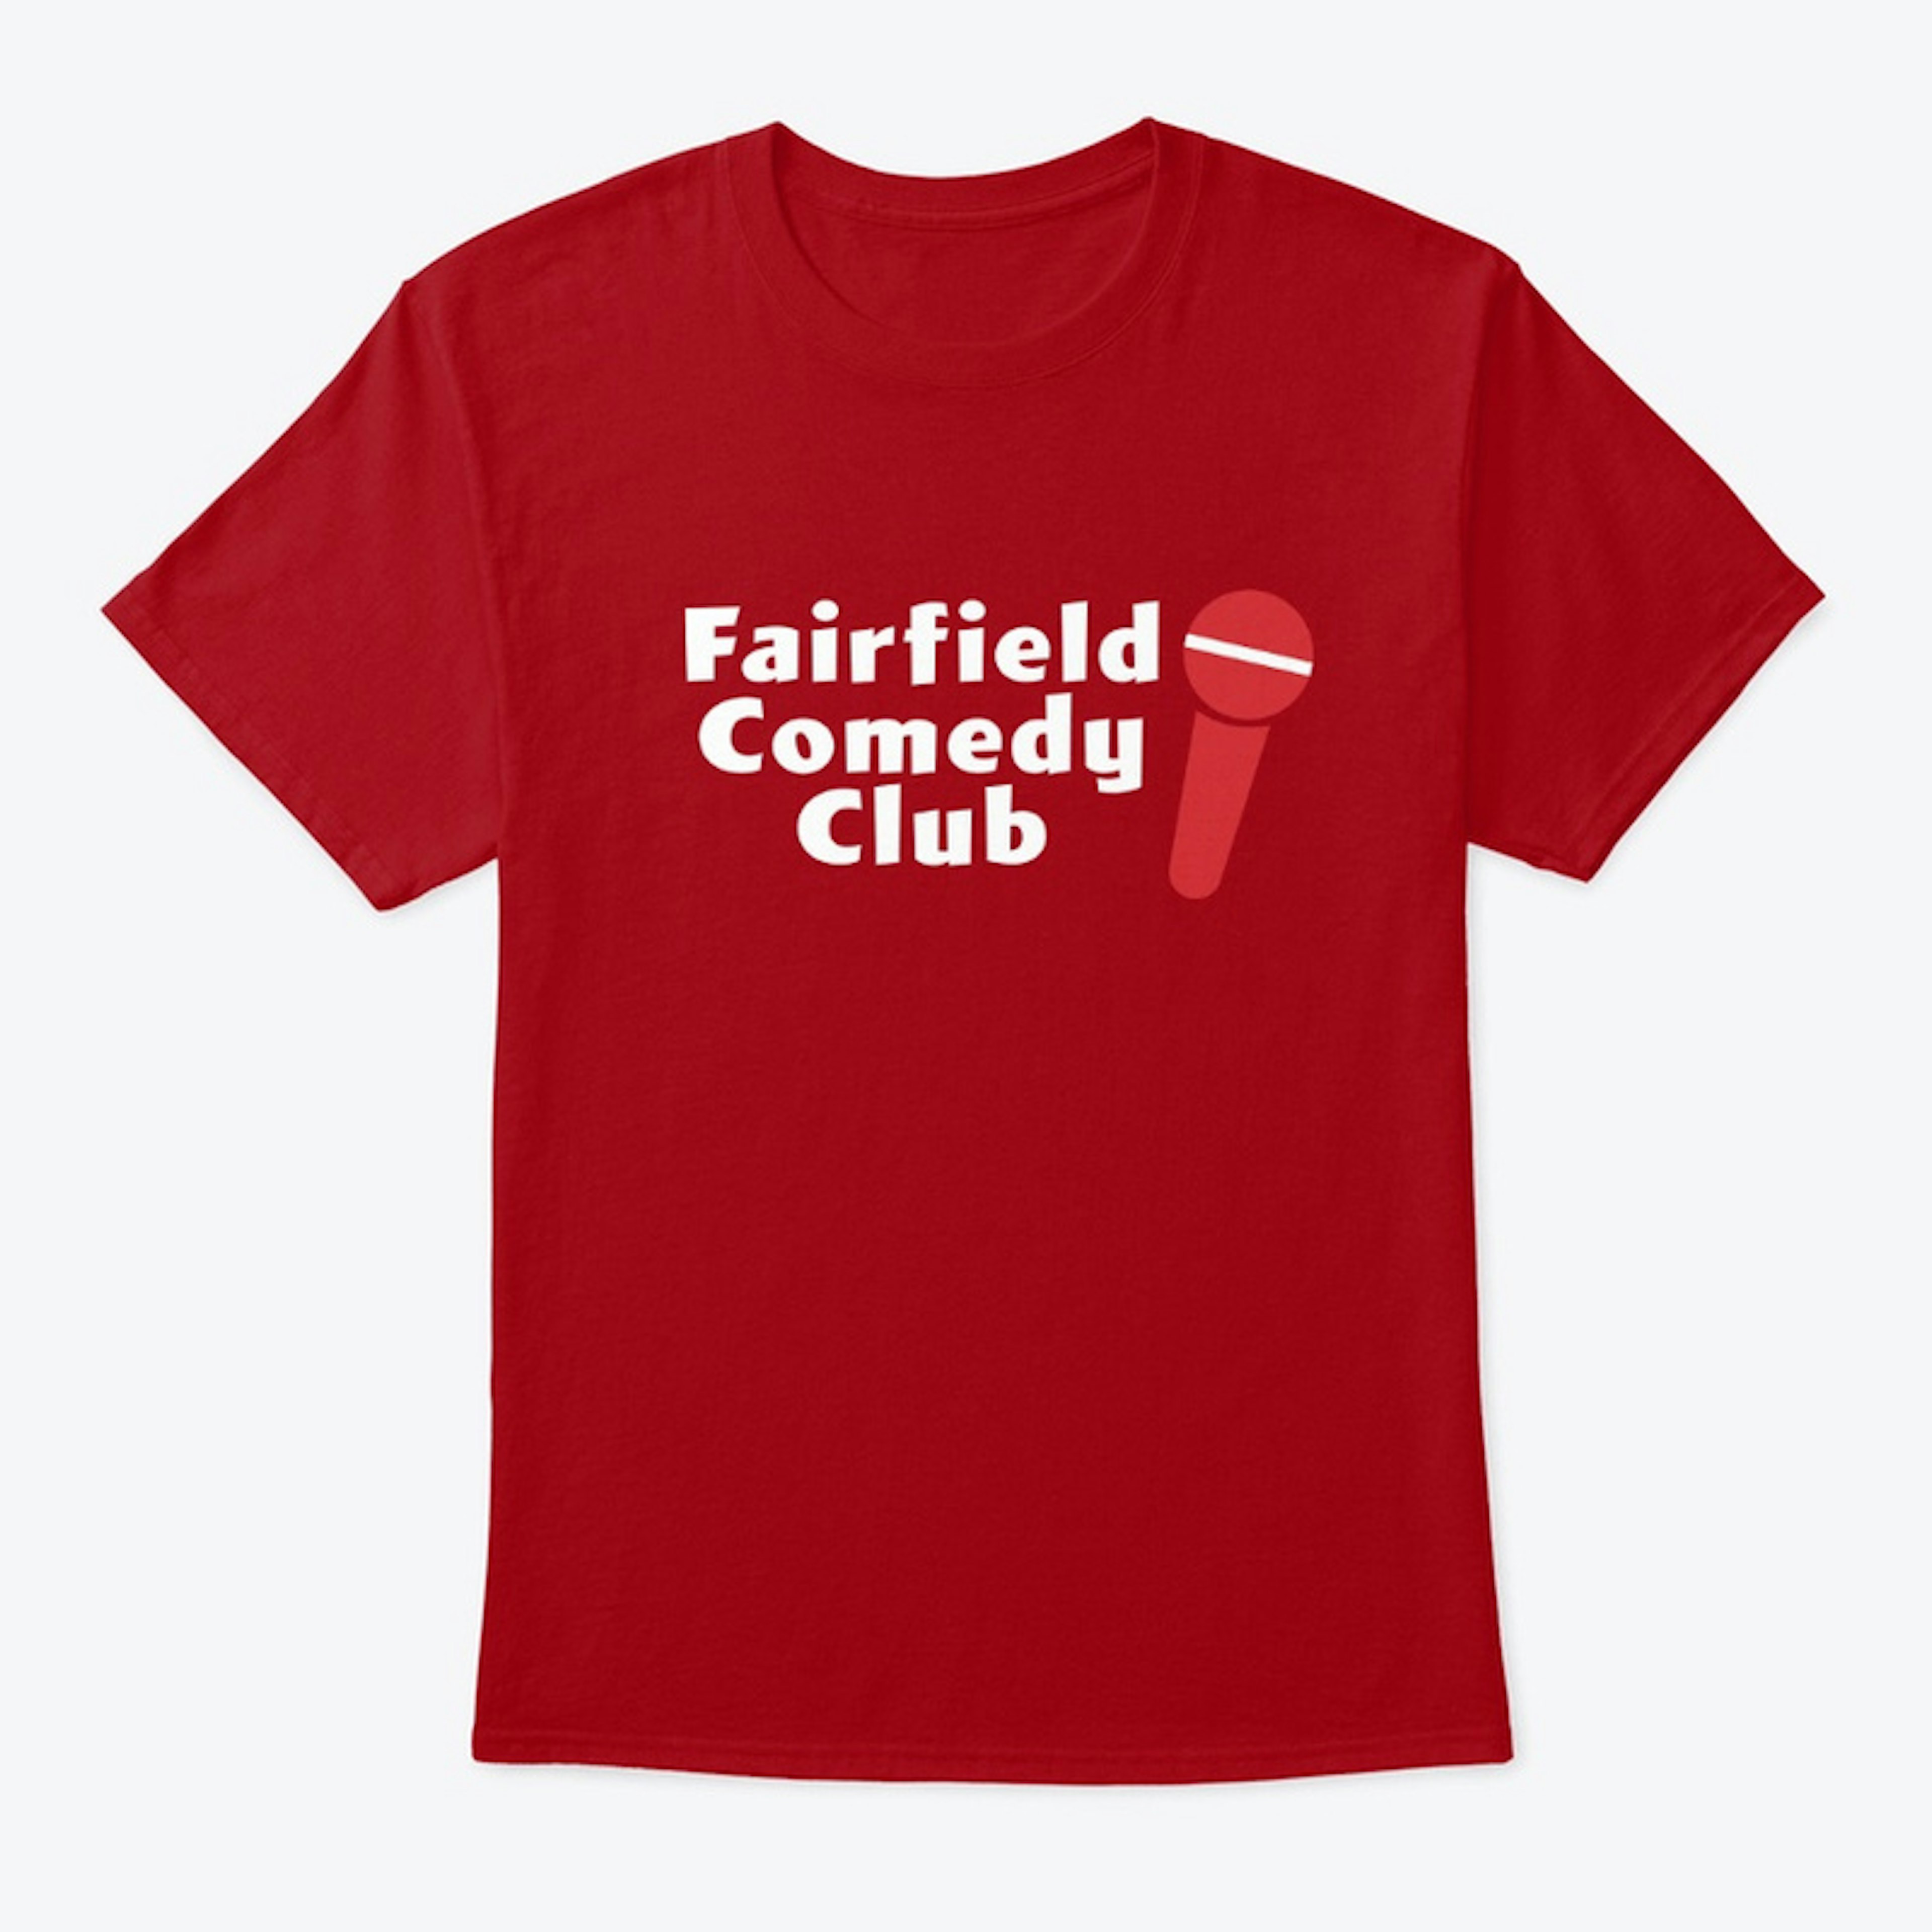 Fairfield Comedy Club Tee 